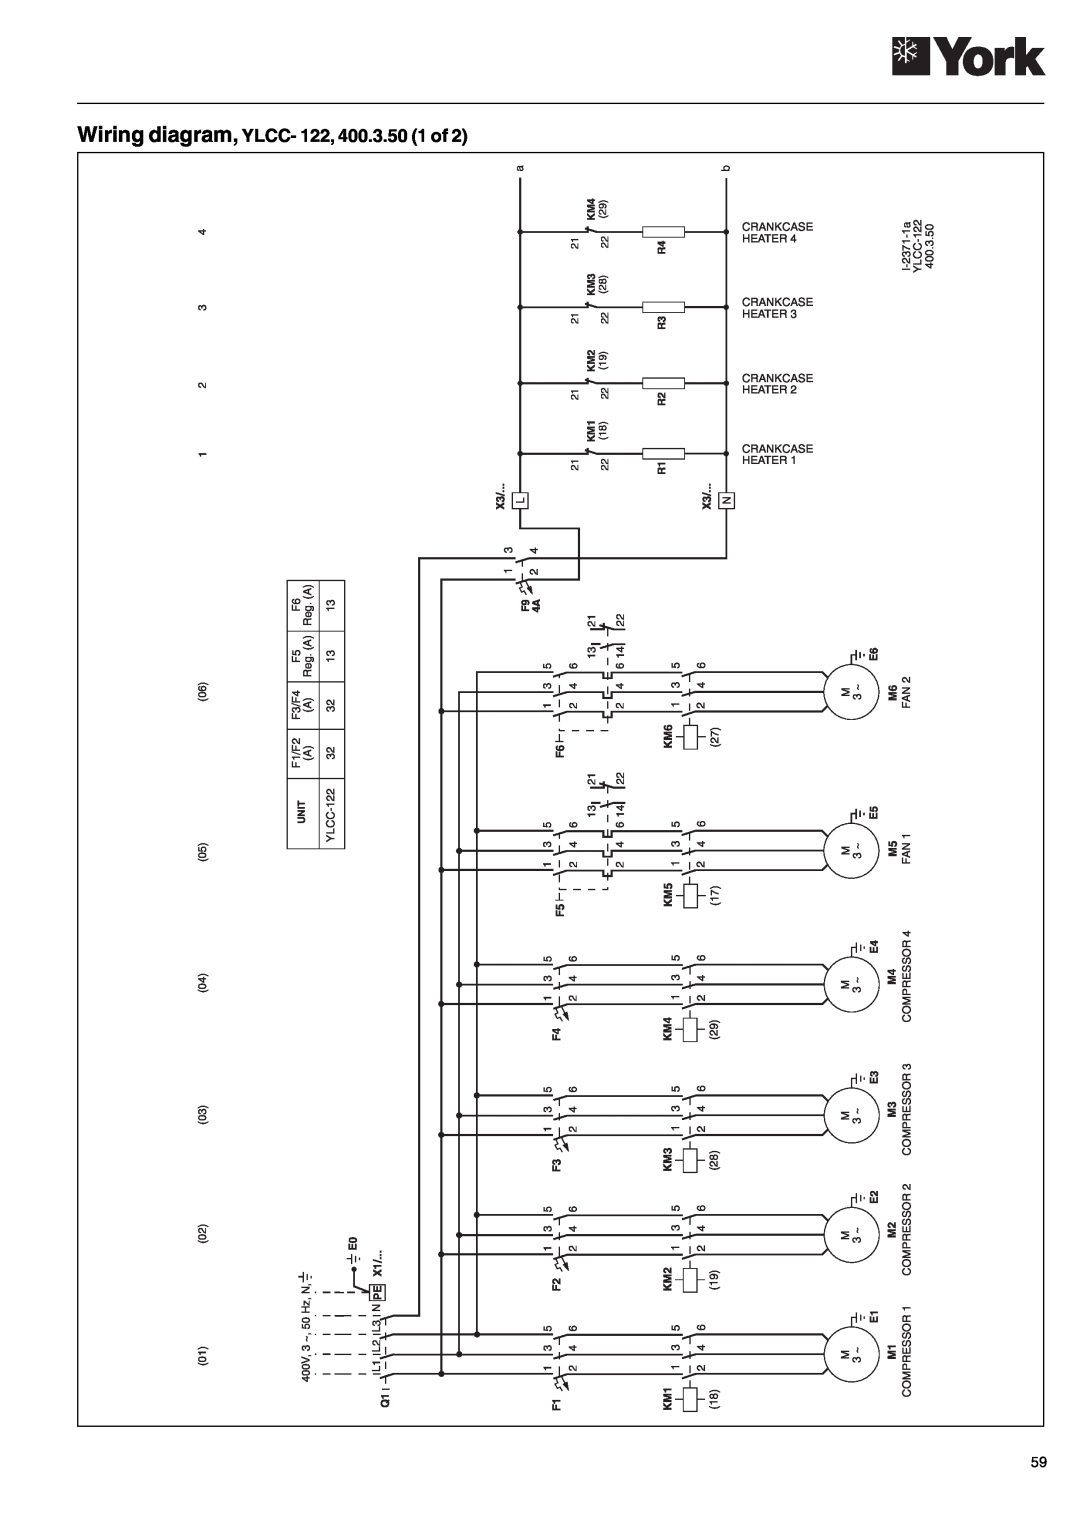 York 152, YLCC 42/62/82/102/112, YLCC-h manual Wiring diagram, YLCC- 122, 400.3.50 1 of 